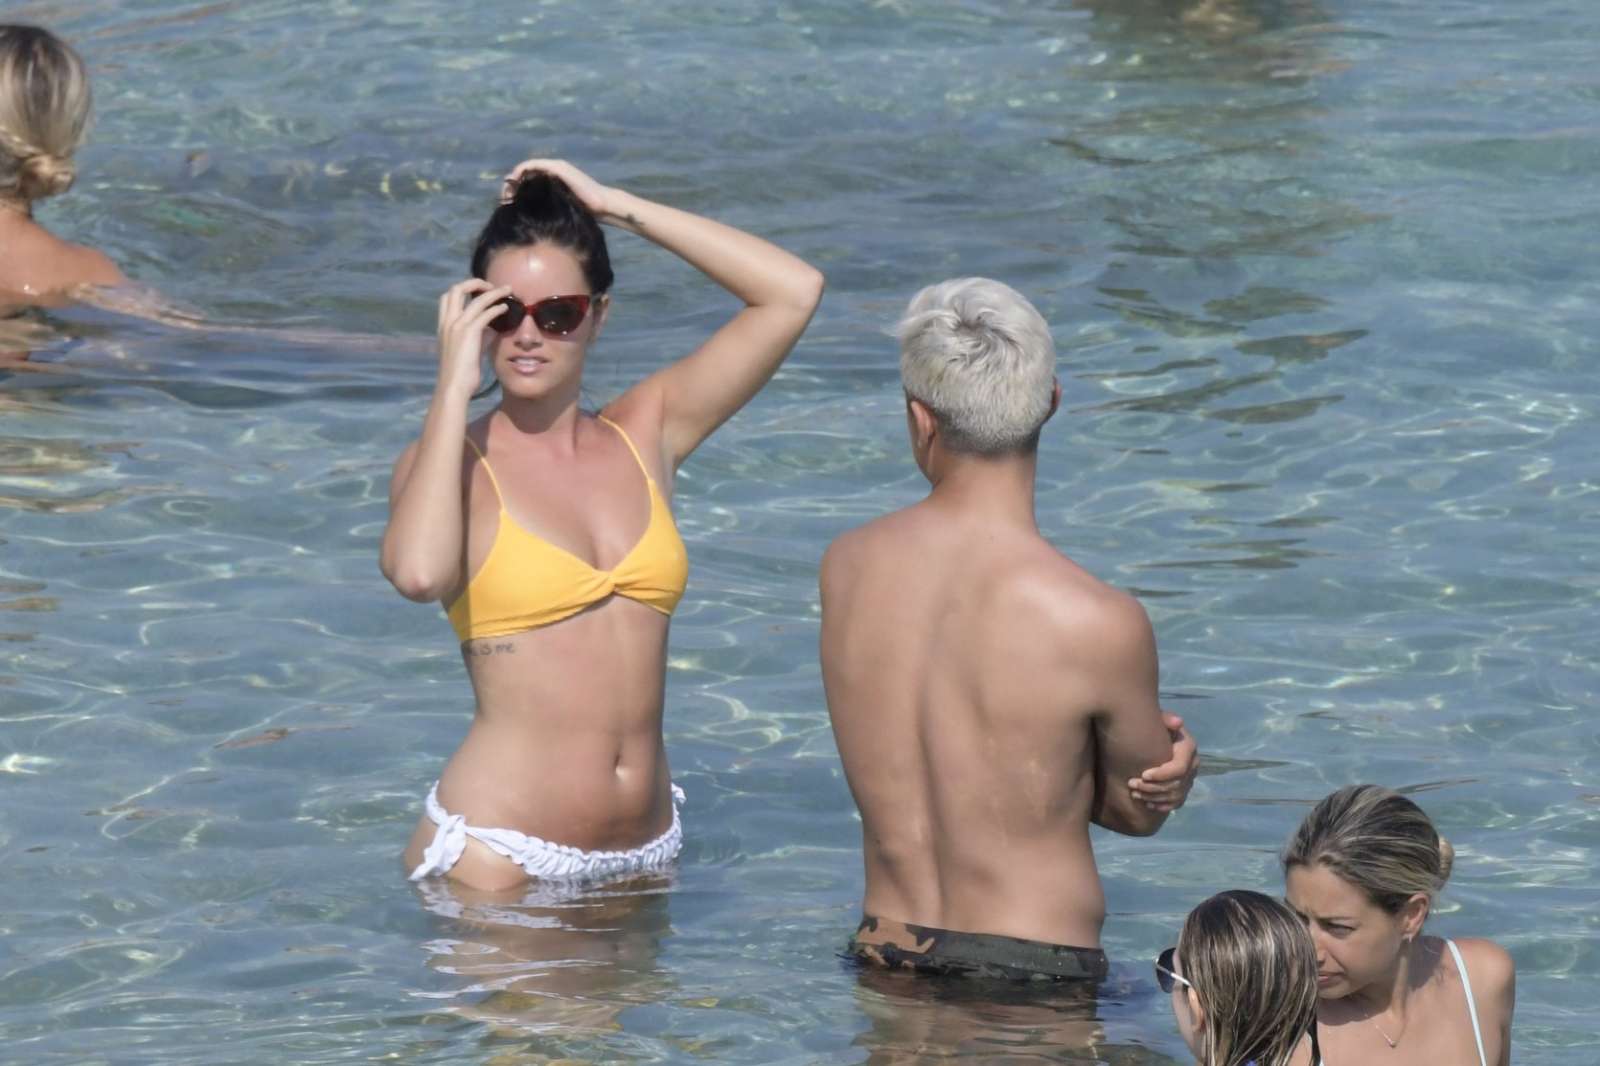 Oriana Sabatini in Bikini at the beach in Mykonos July 28, 2018 26